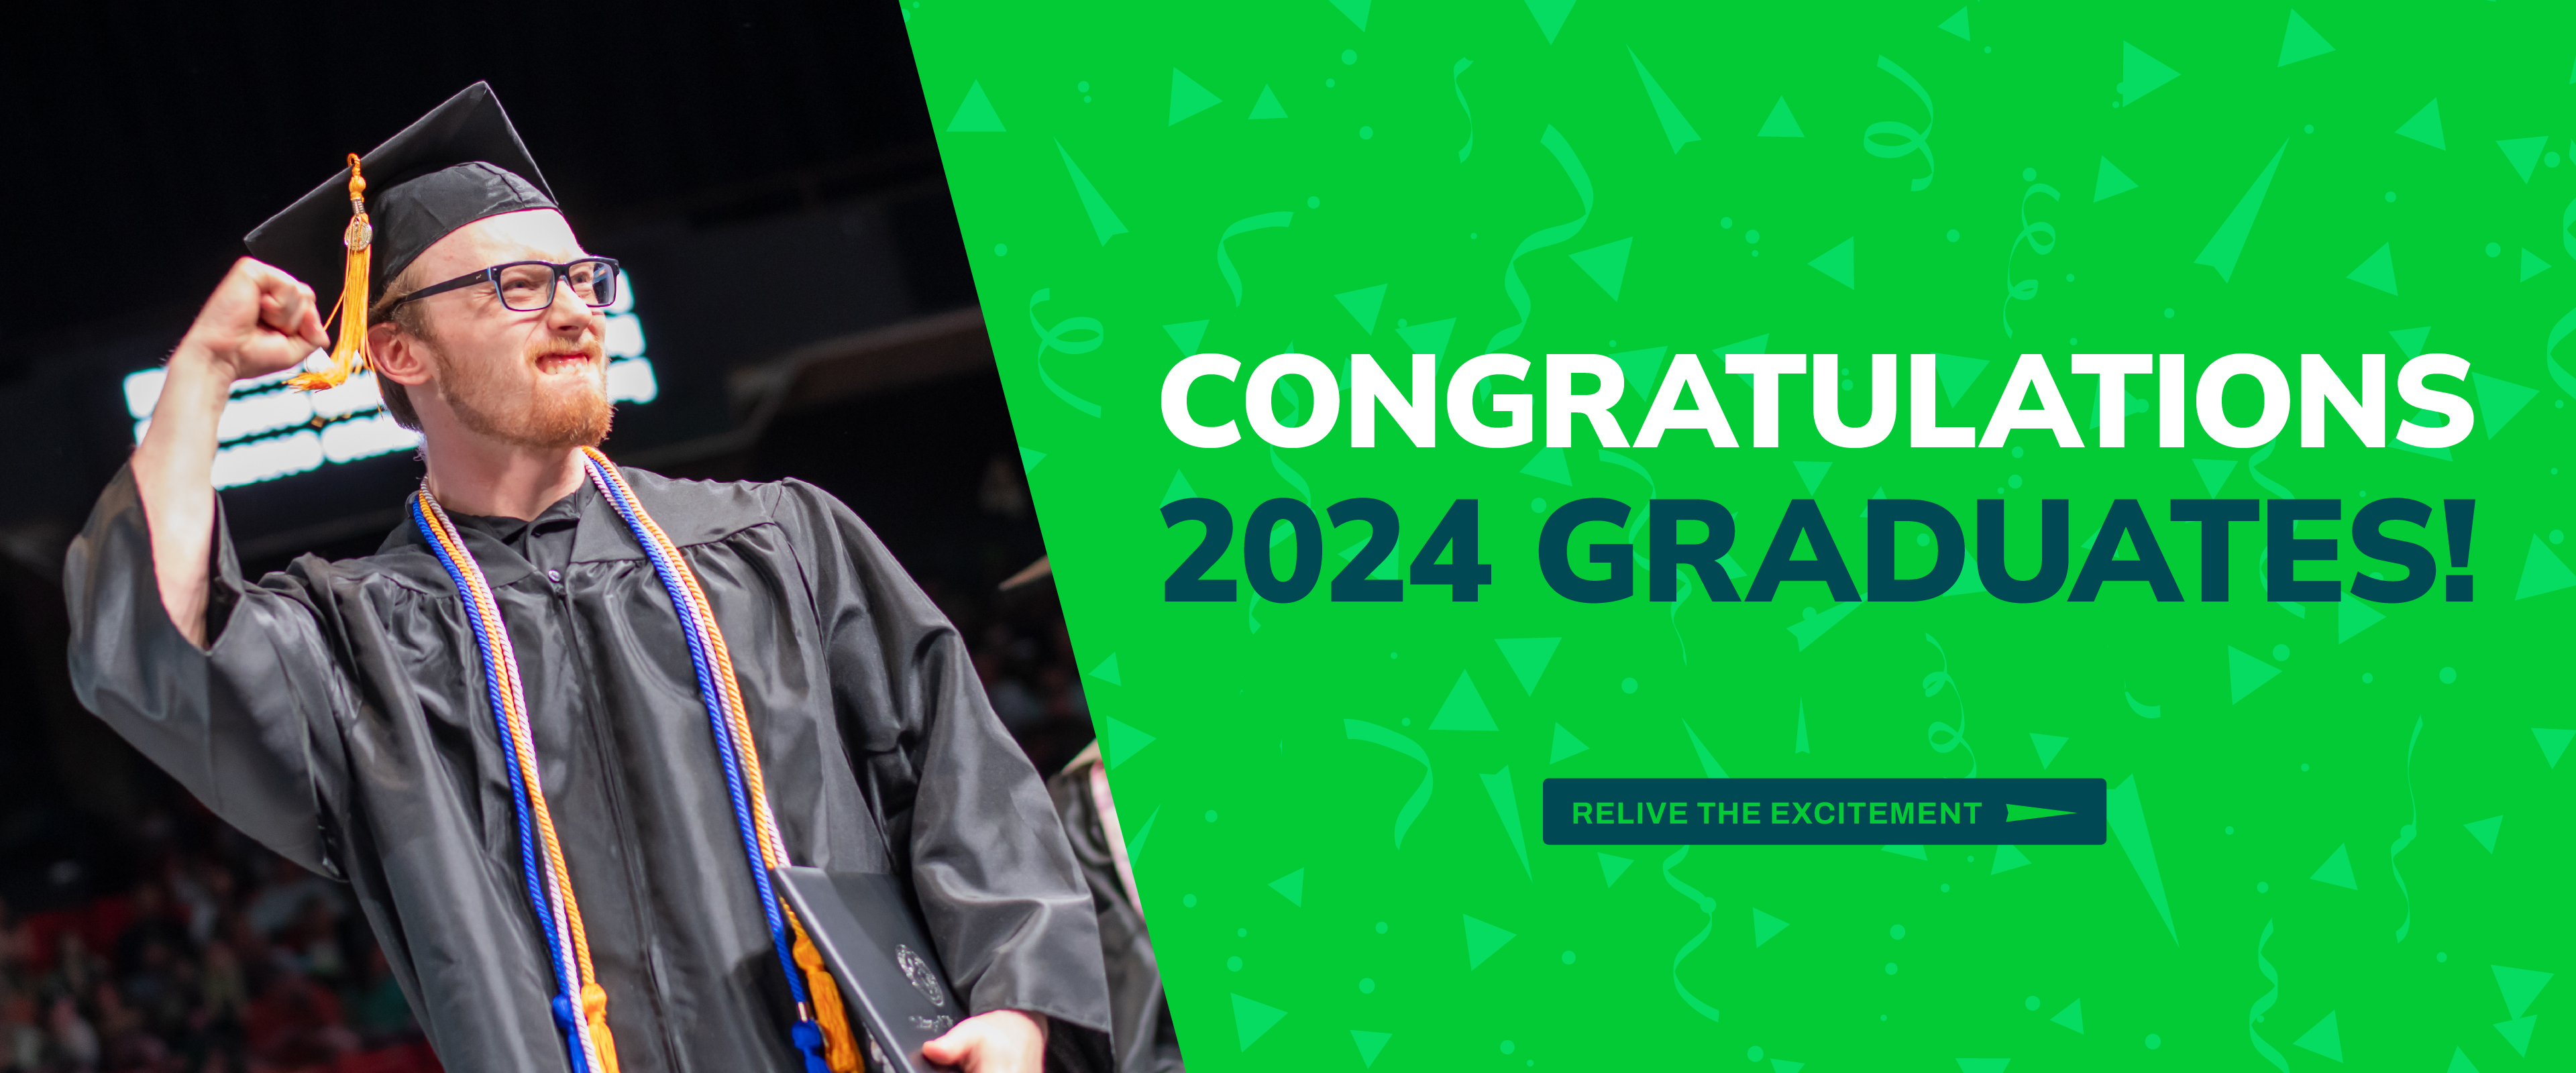 Congratuations 2024 Graduates